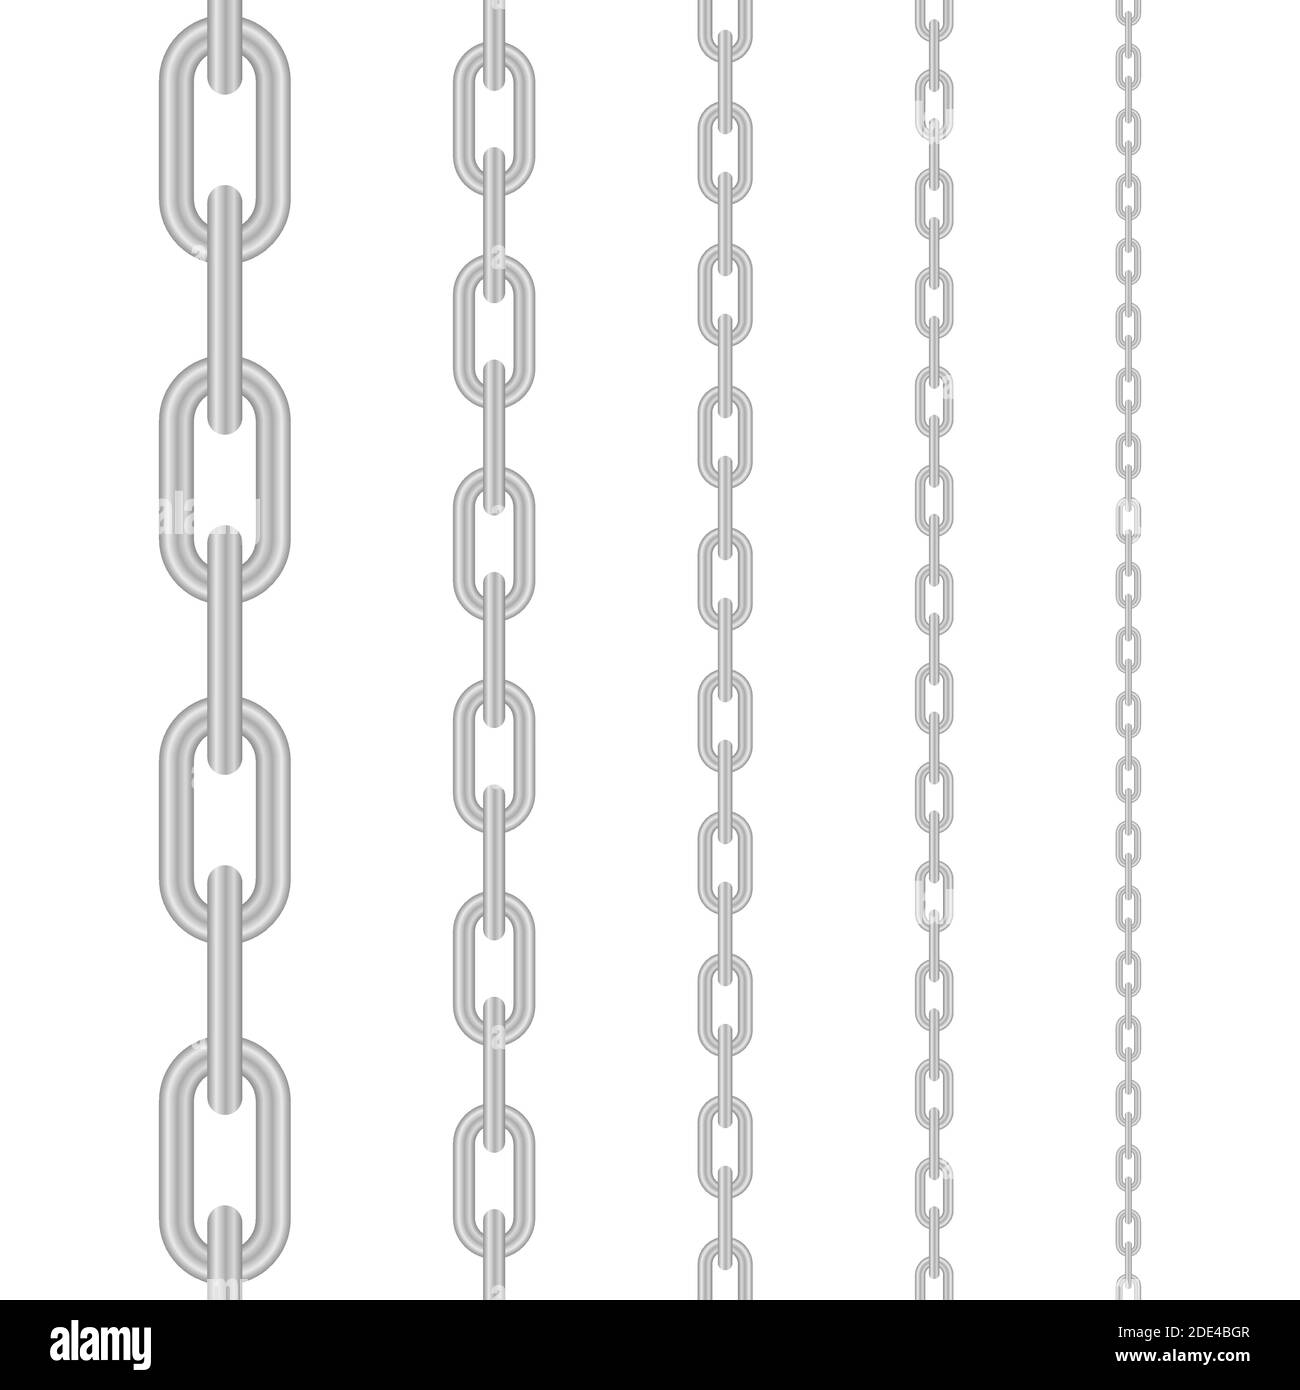 Metallkette. Blockkette. Sammlung von nahtlosen Metallketten in Silber  gefärbt. Vektorgrafik Stock-Vektorgrafik - Alamy